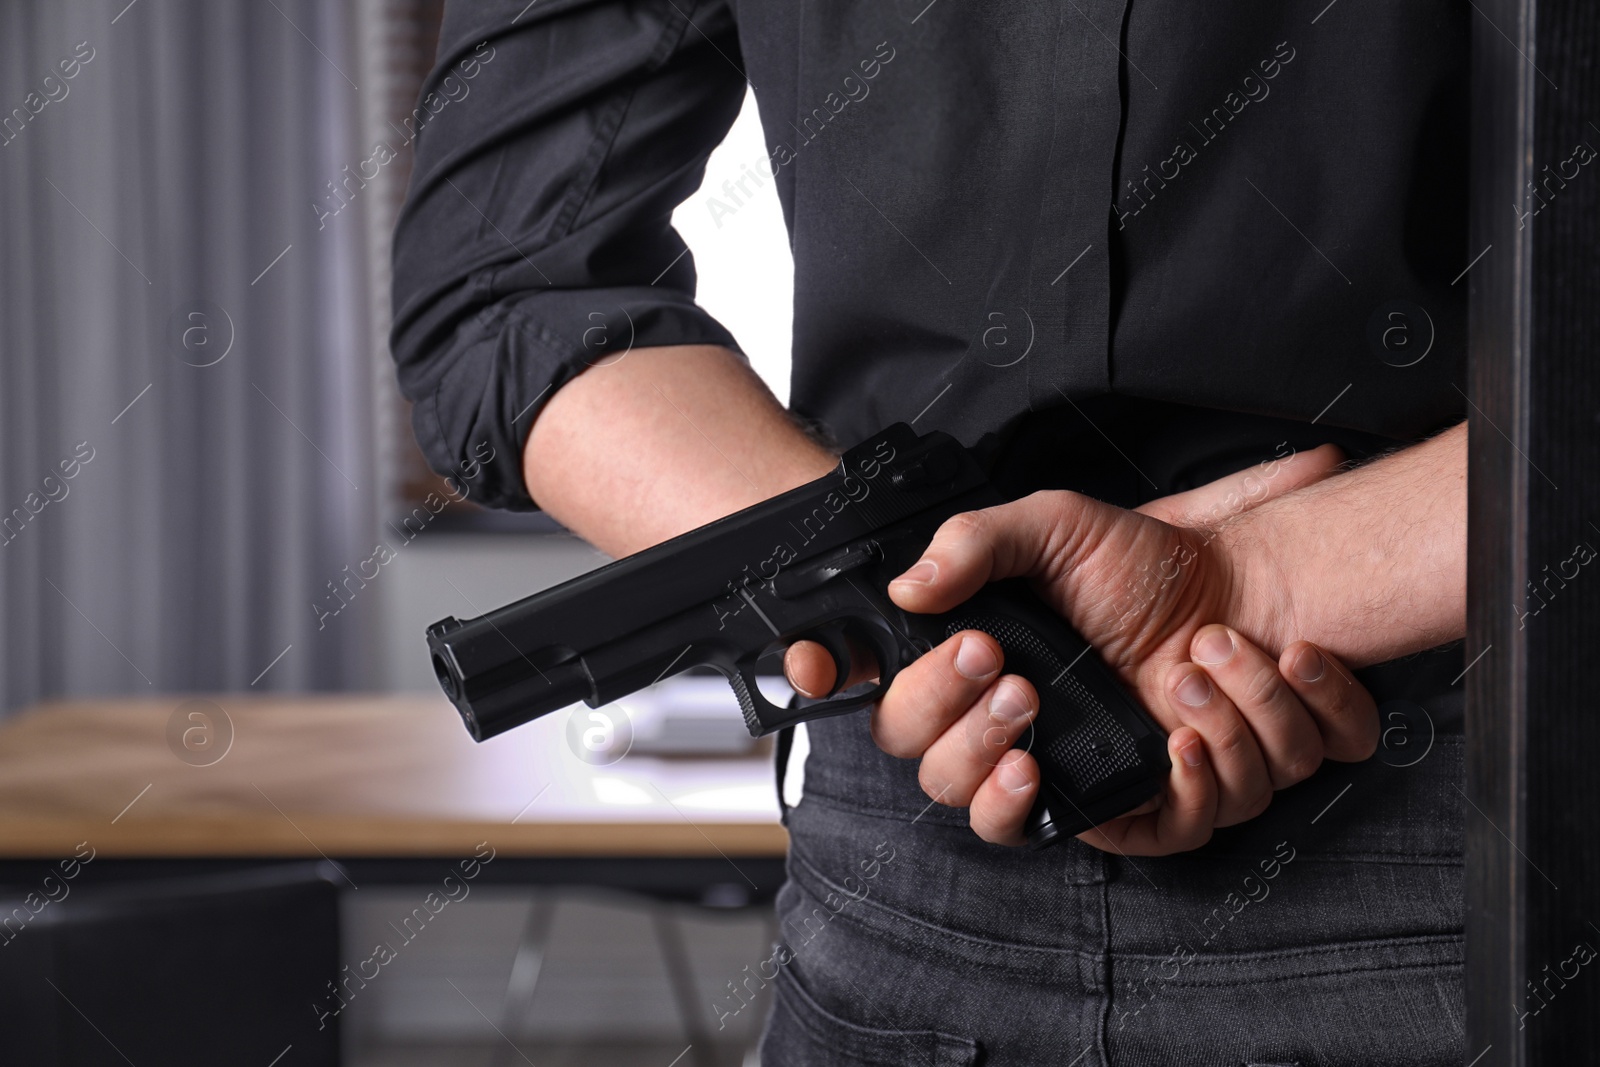 Photo of Man holding gun indoors, closeup. Dangerous criminal